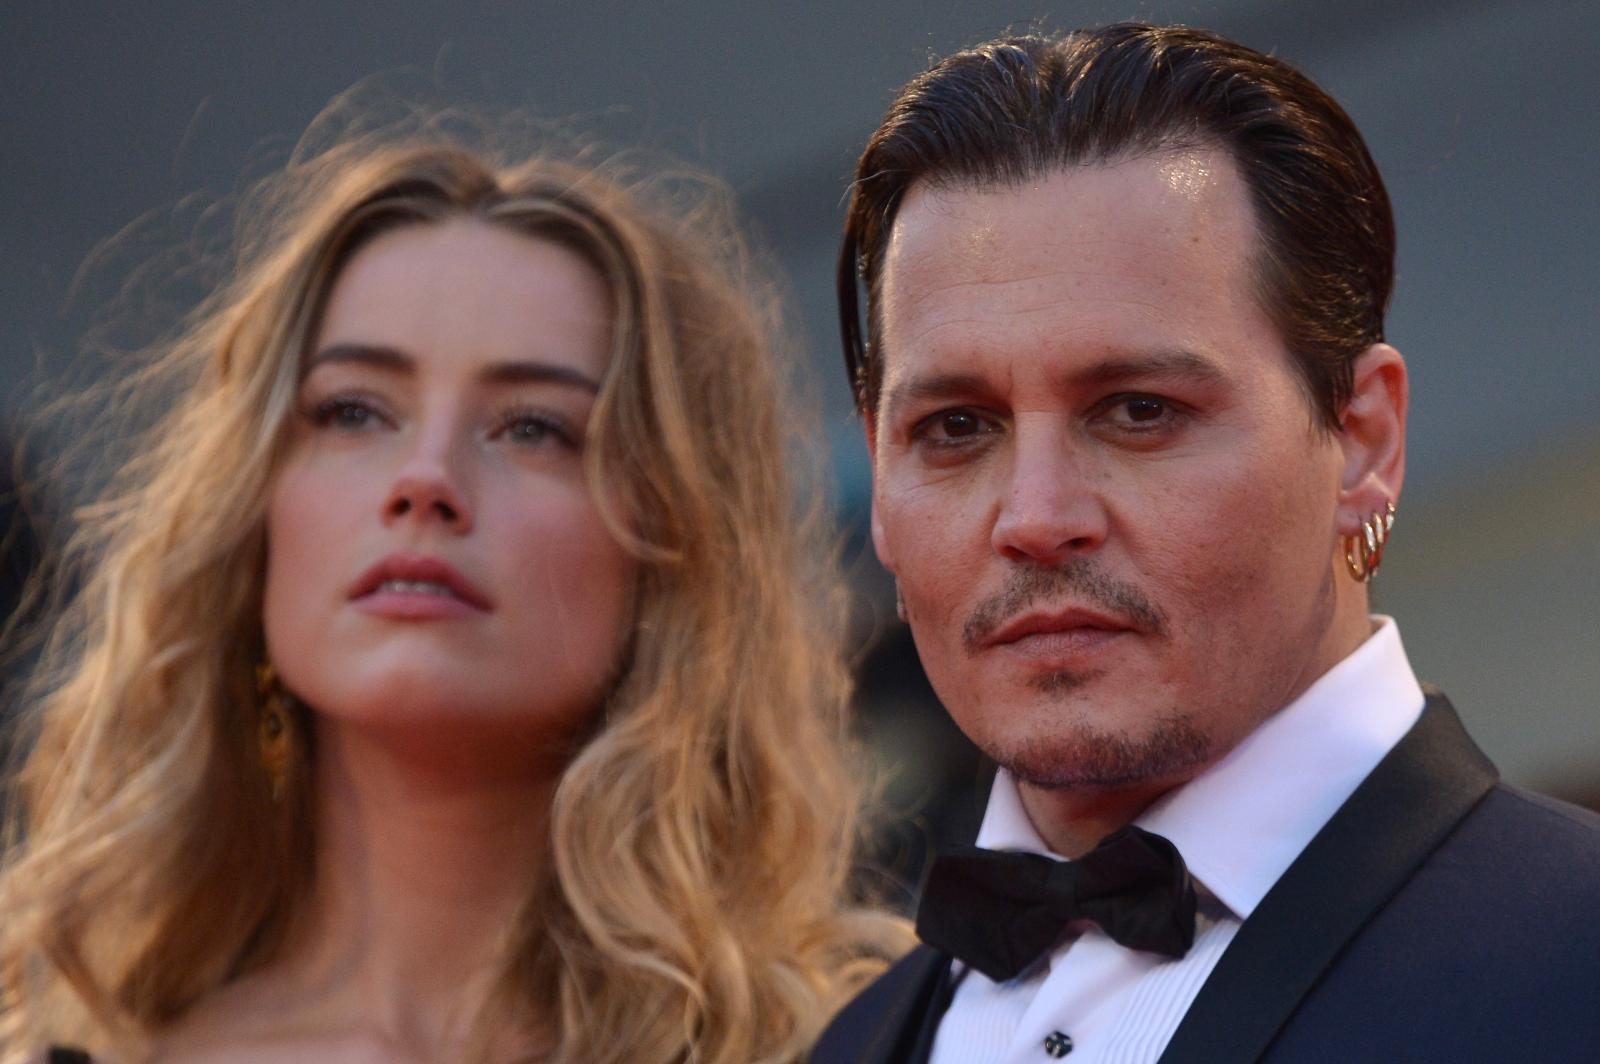 Jugée coupable de diffamation, Amber Heard doit payer 15 millions de dollars à Johnny Depp